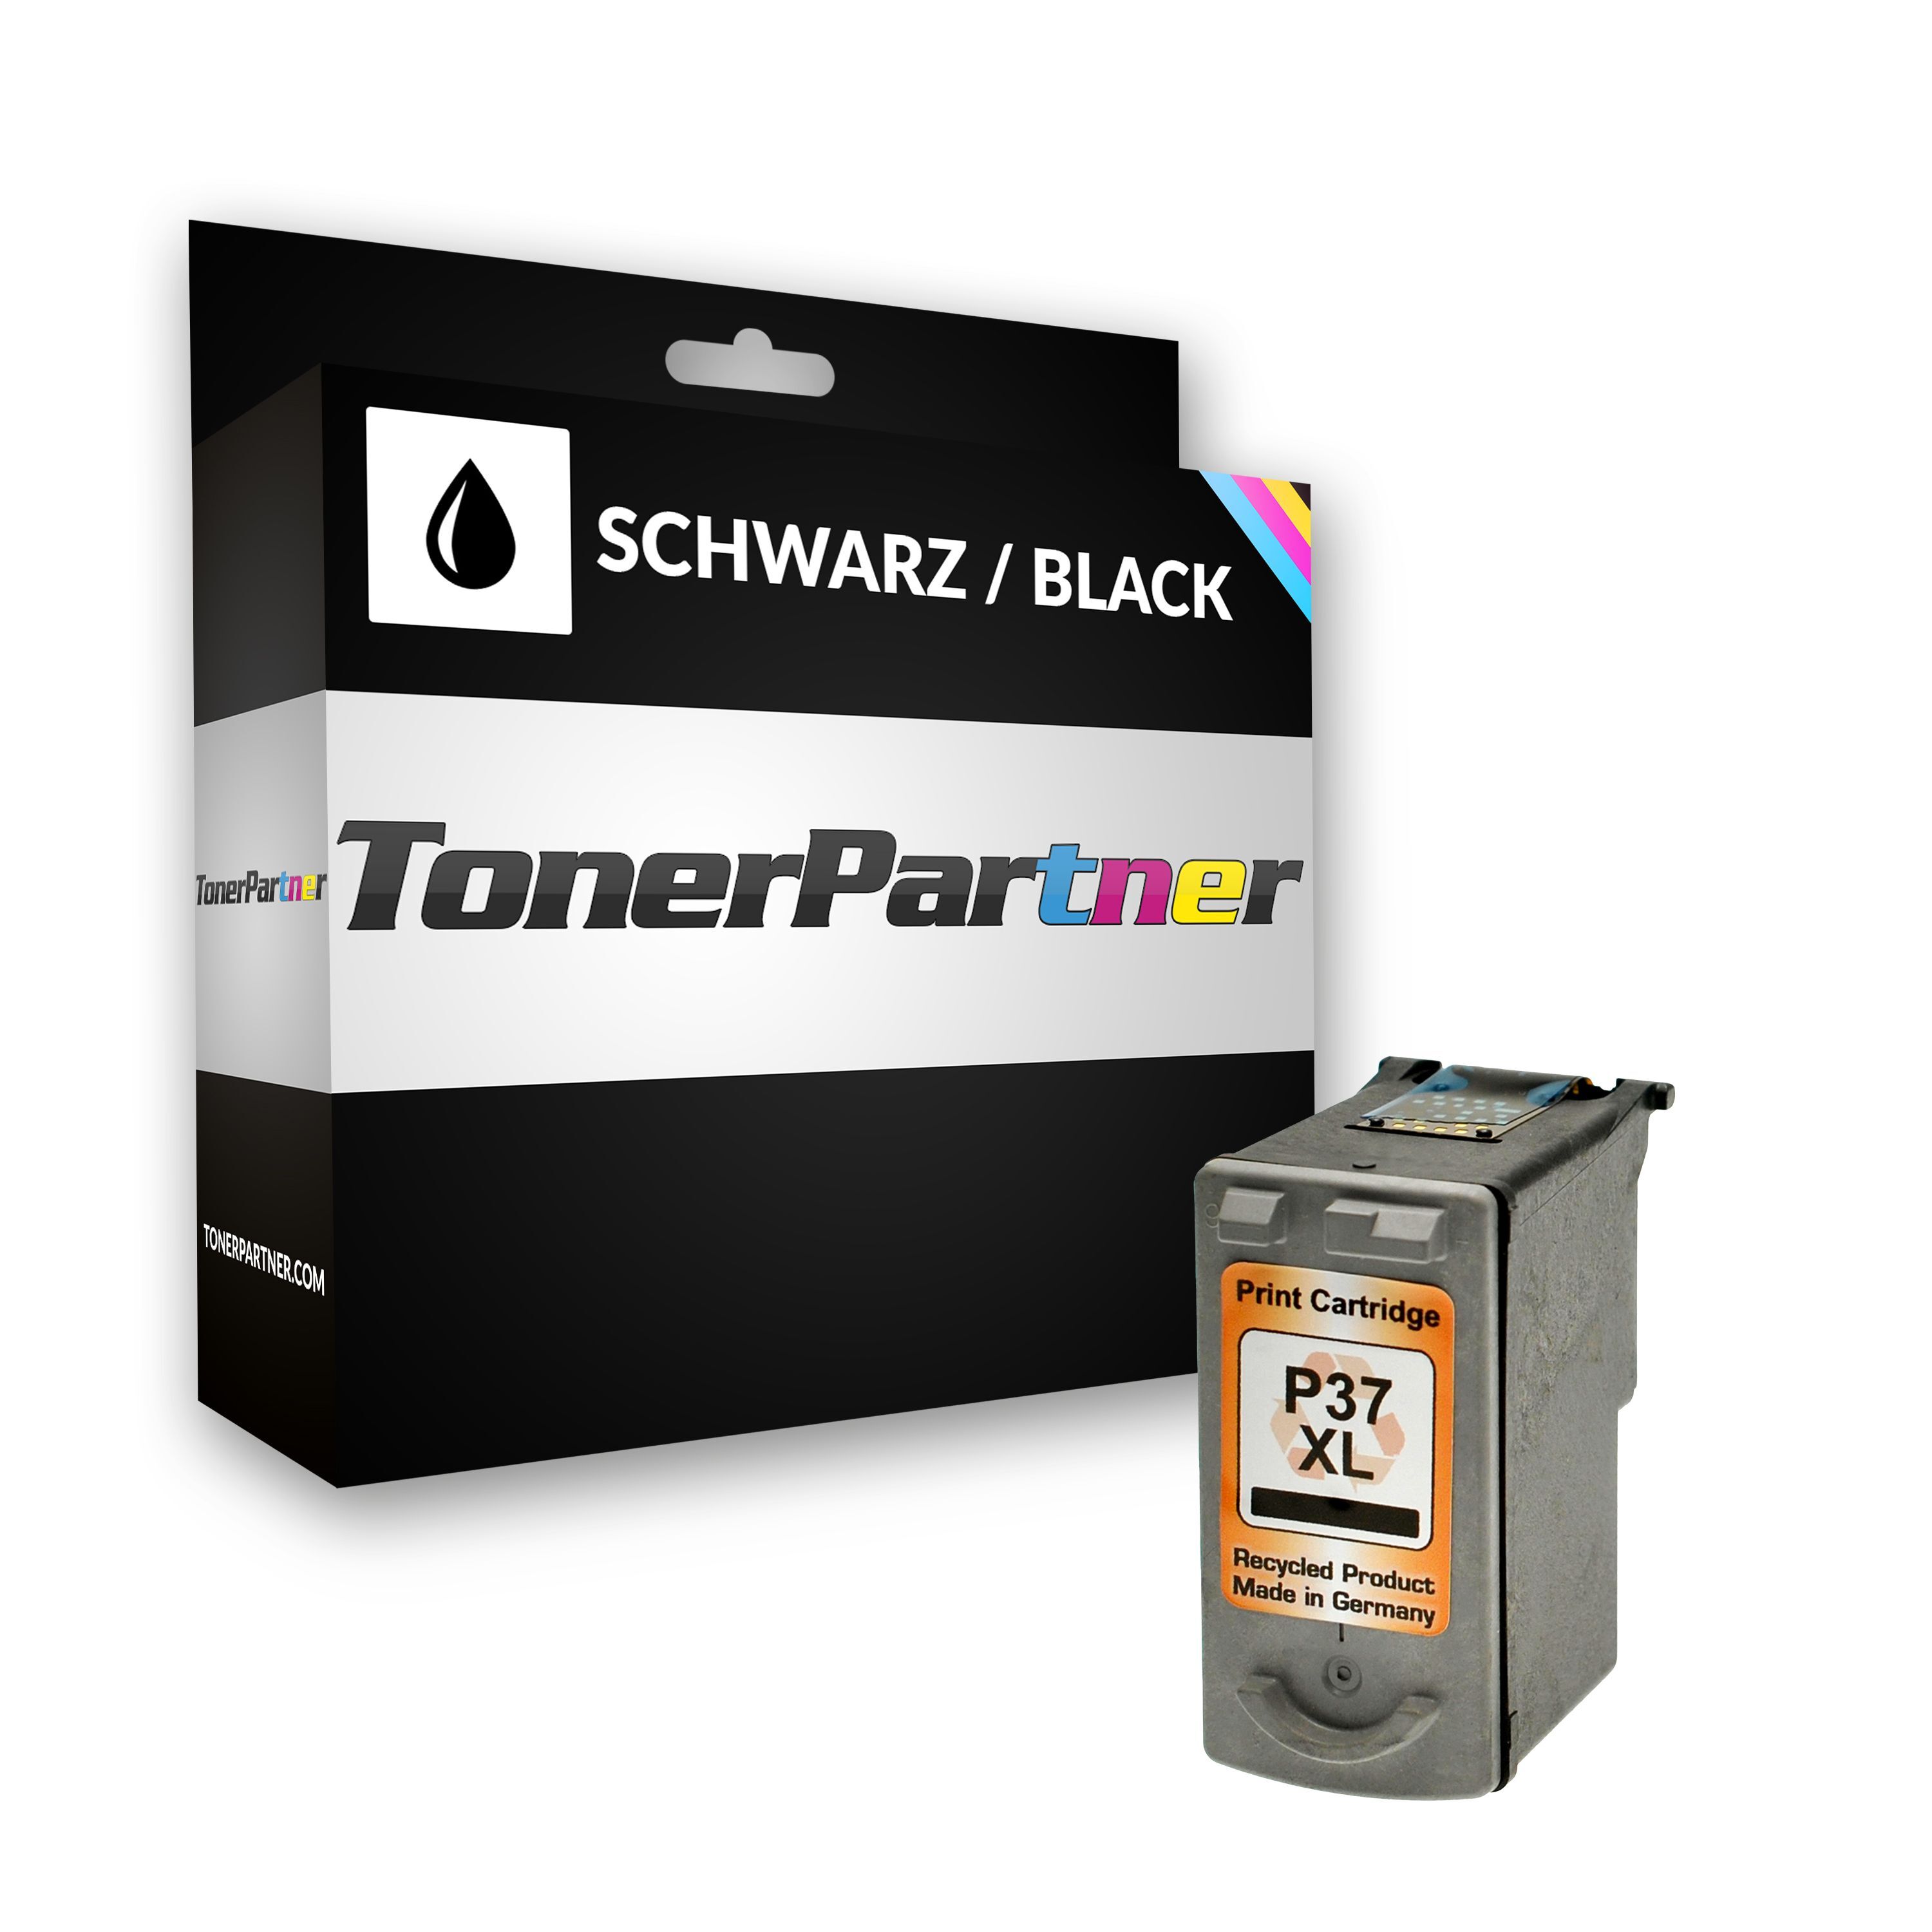 TonerPartner Compatible avec Canon Pixma IP 2600 cartouche d'encre (PG-37 / 2145 B 001) noir, 219 pages, 4,58 centimes par page, contenu: 9 ml de TonerPartner